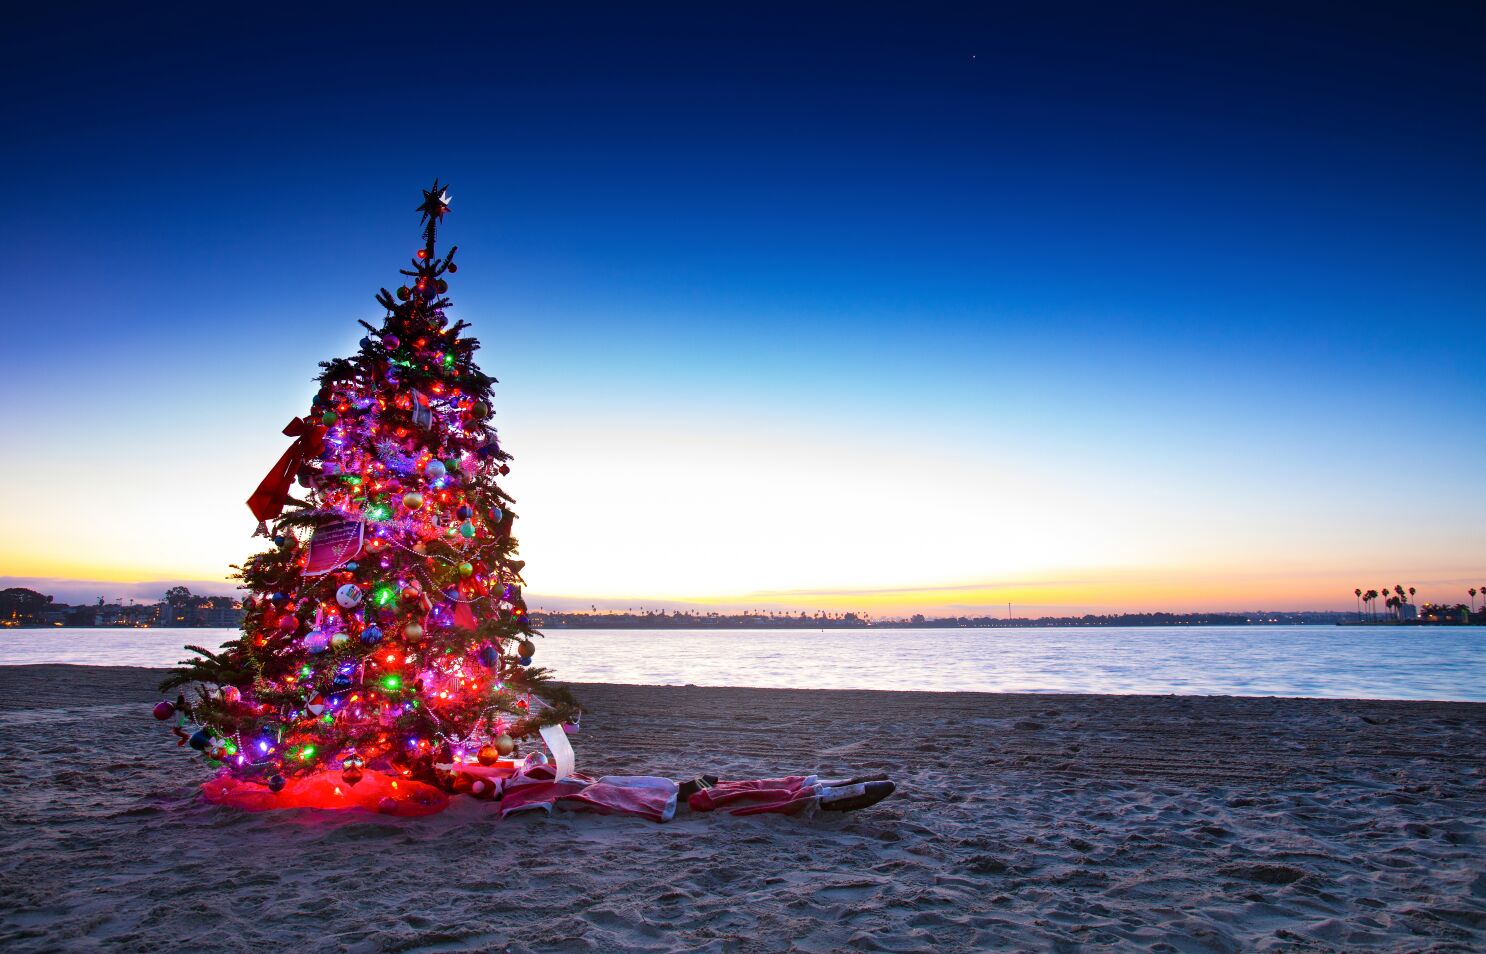 Perseo cuero Apelar a ser atractivo Dónde ver luces navideñas este año - San Diego Union-Tribune en Español